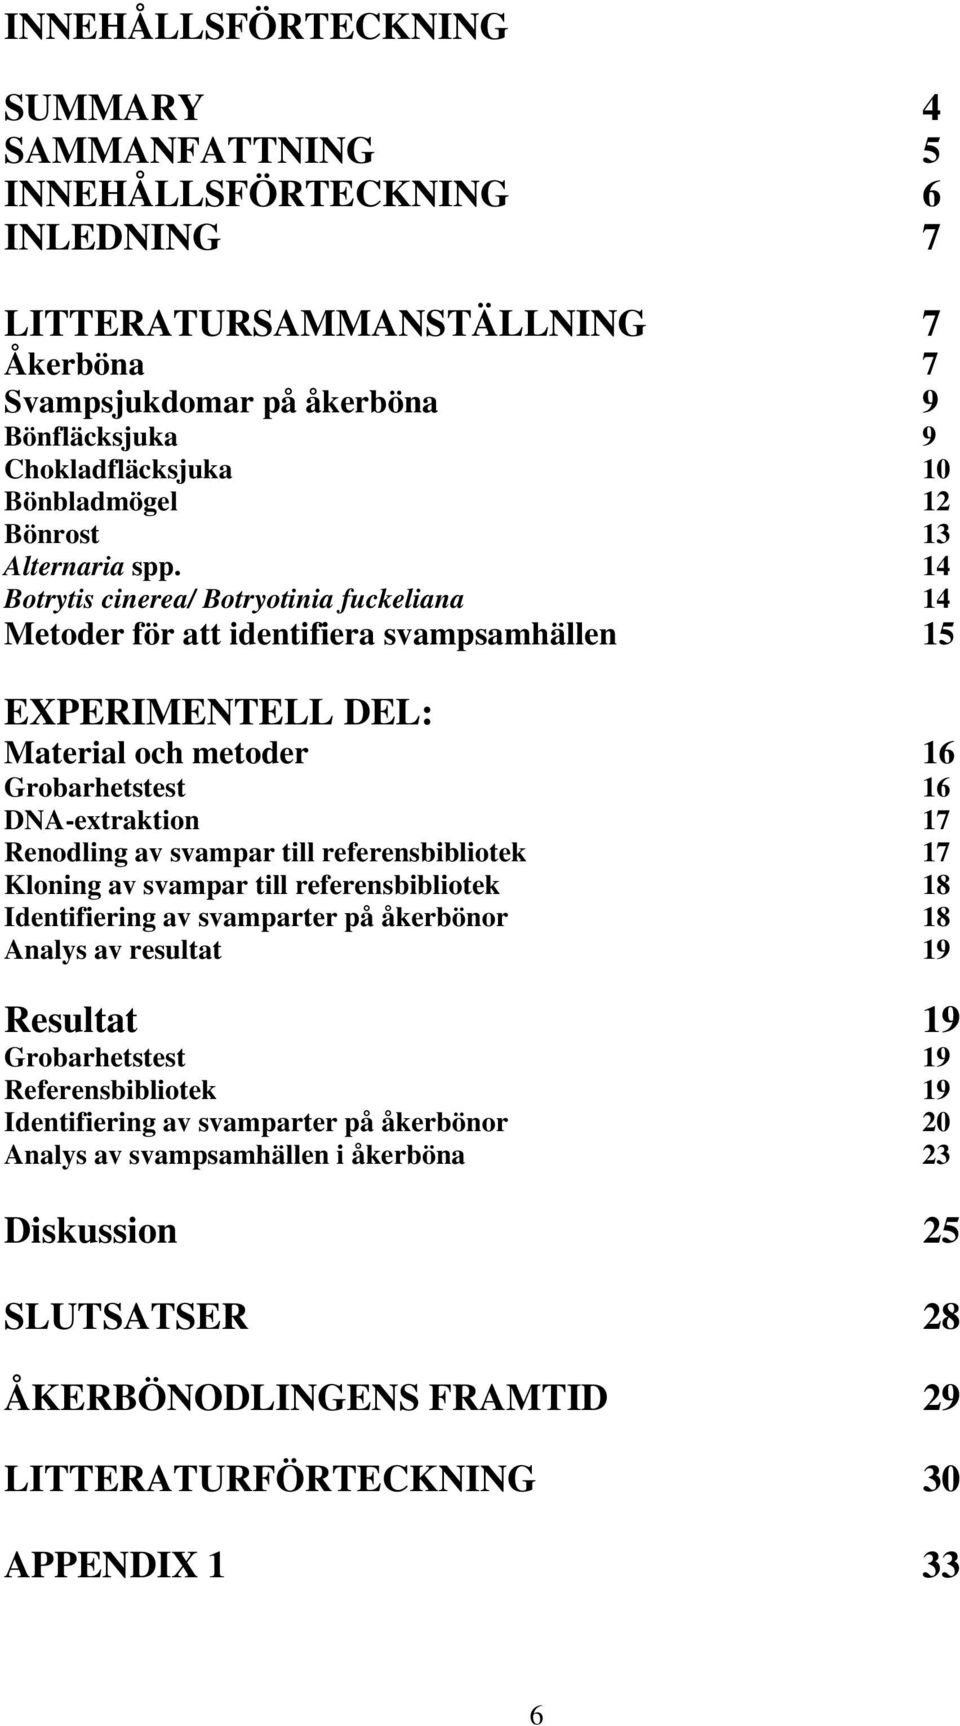 14 Botrytis cinerea/ Botryotinia fuckeliana 14 Metoder för att identifiera svampsamhällen 15 EXPERIMENTELL DEL: Material och metoder 16 Grobarhetstest 16 DNA-extraktion 17 Renodling av svampar till